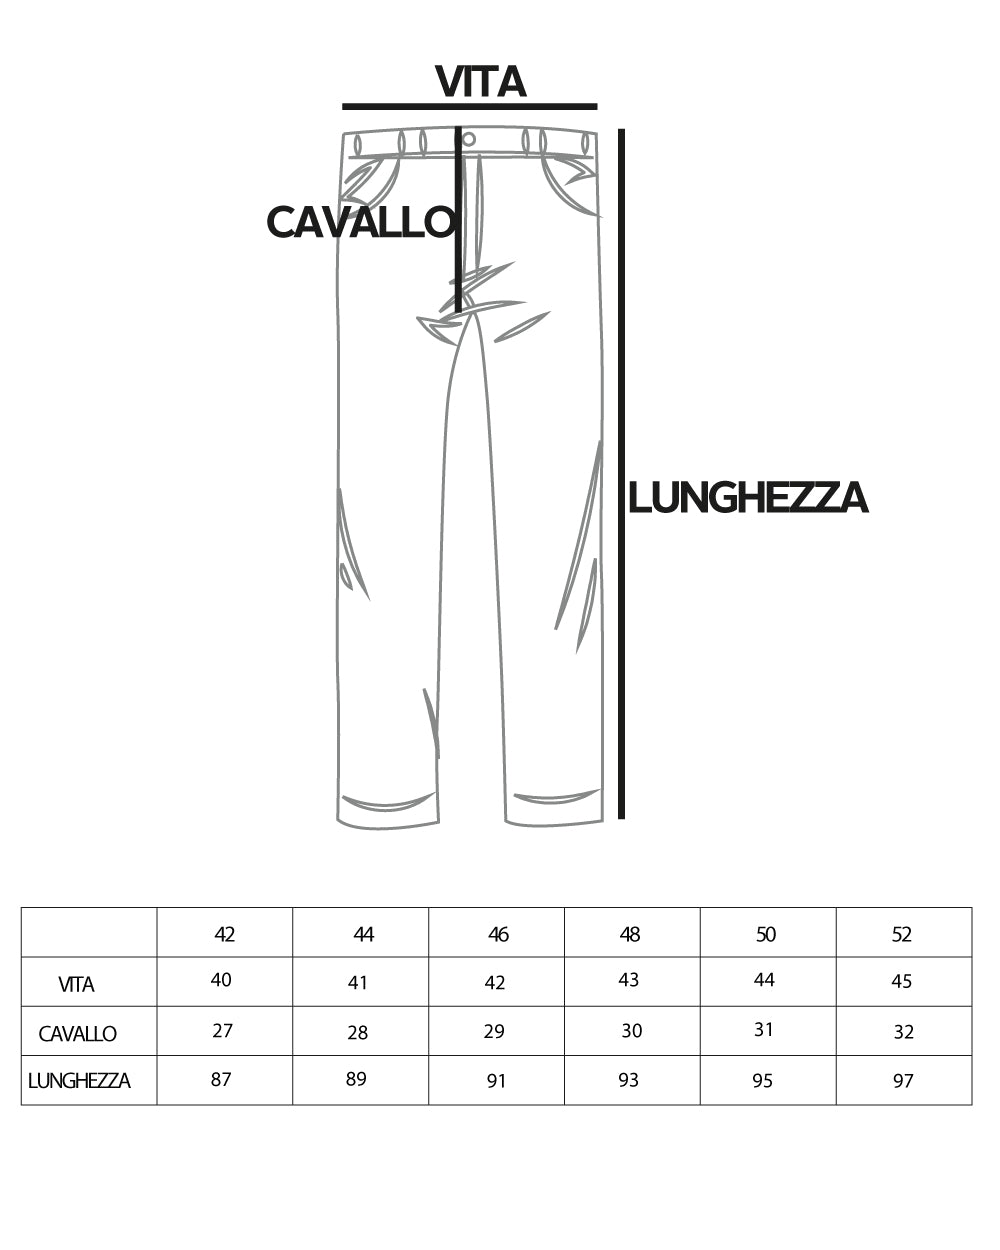 Pantaloni Uomo Abbottonatura Allungata Fibbia Alta Classico Pinces Elegante Nero GIOSAL-P5380A